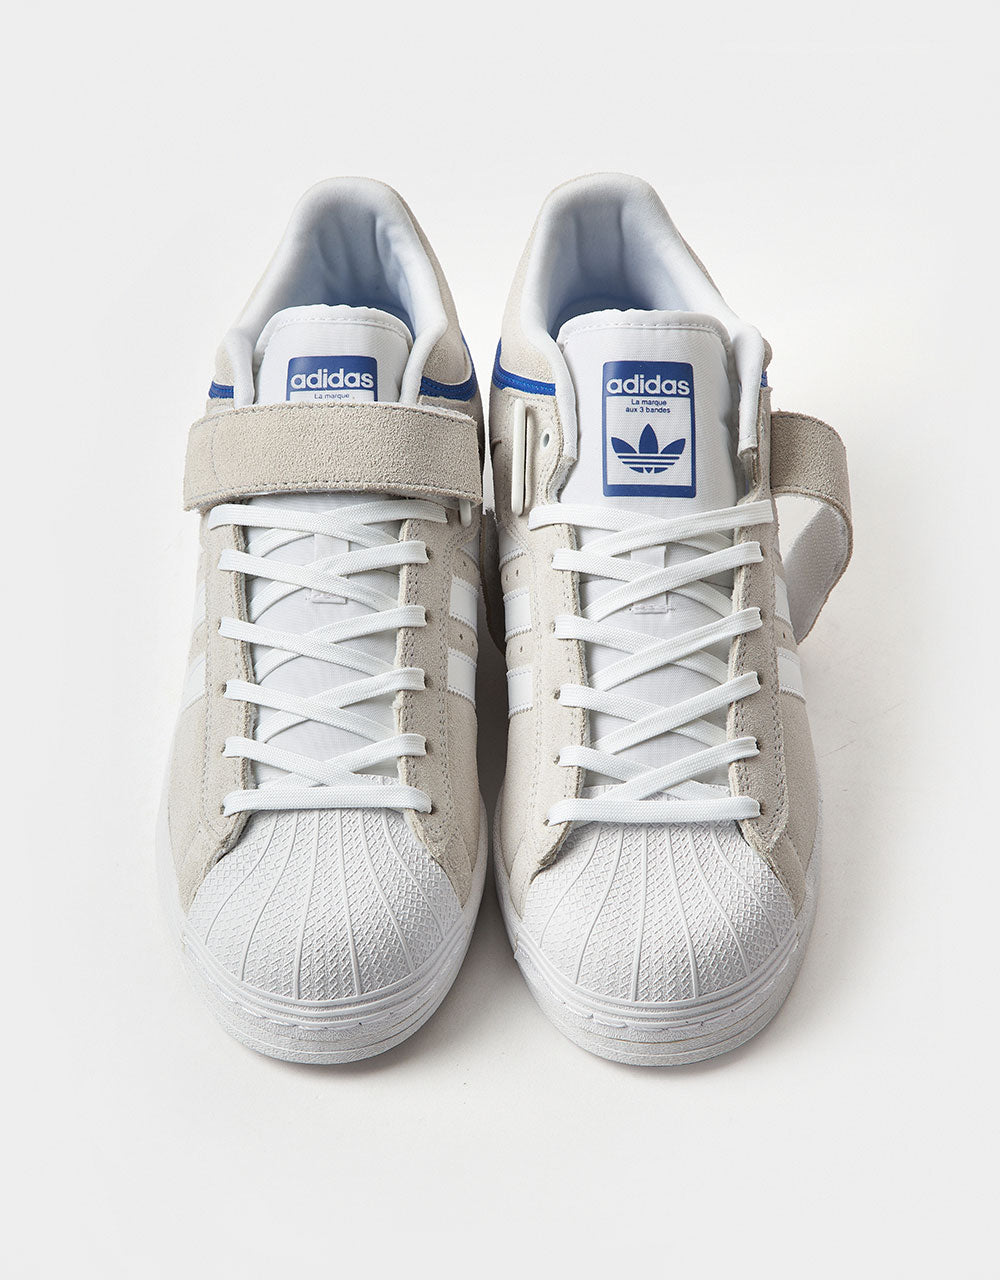 adidas Pro Shell ADV Skate Shoes - Crystal White/White/Team Royal Blue